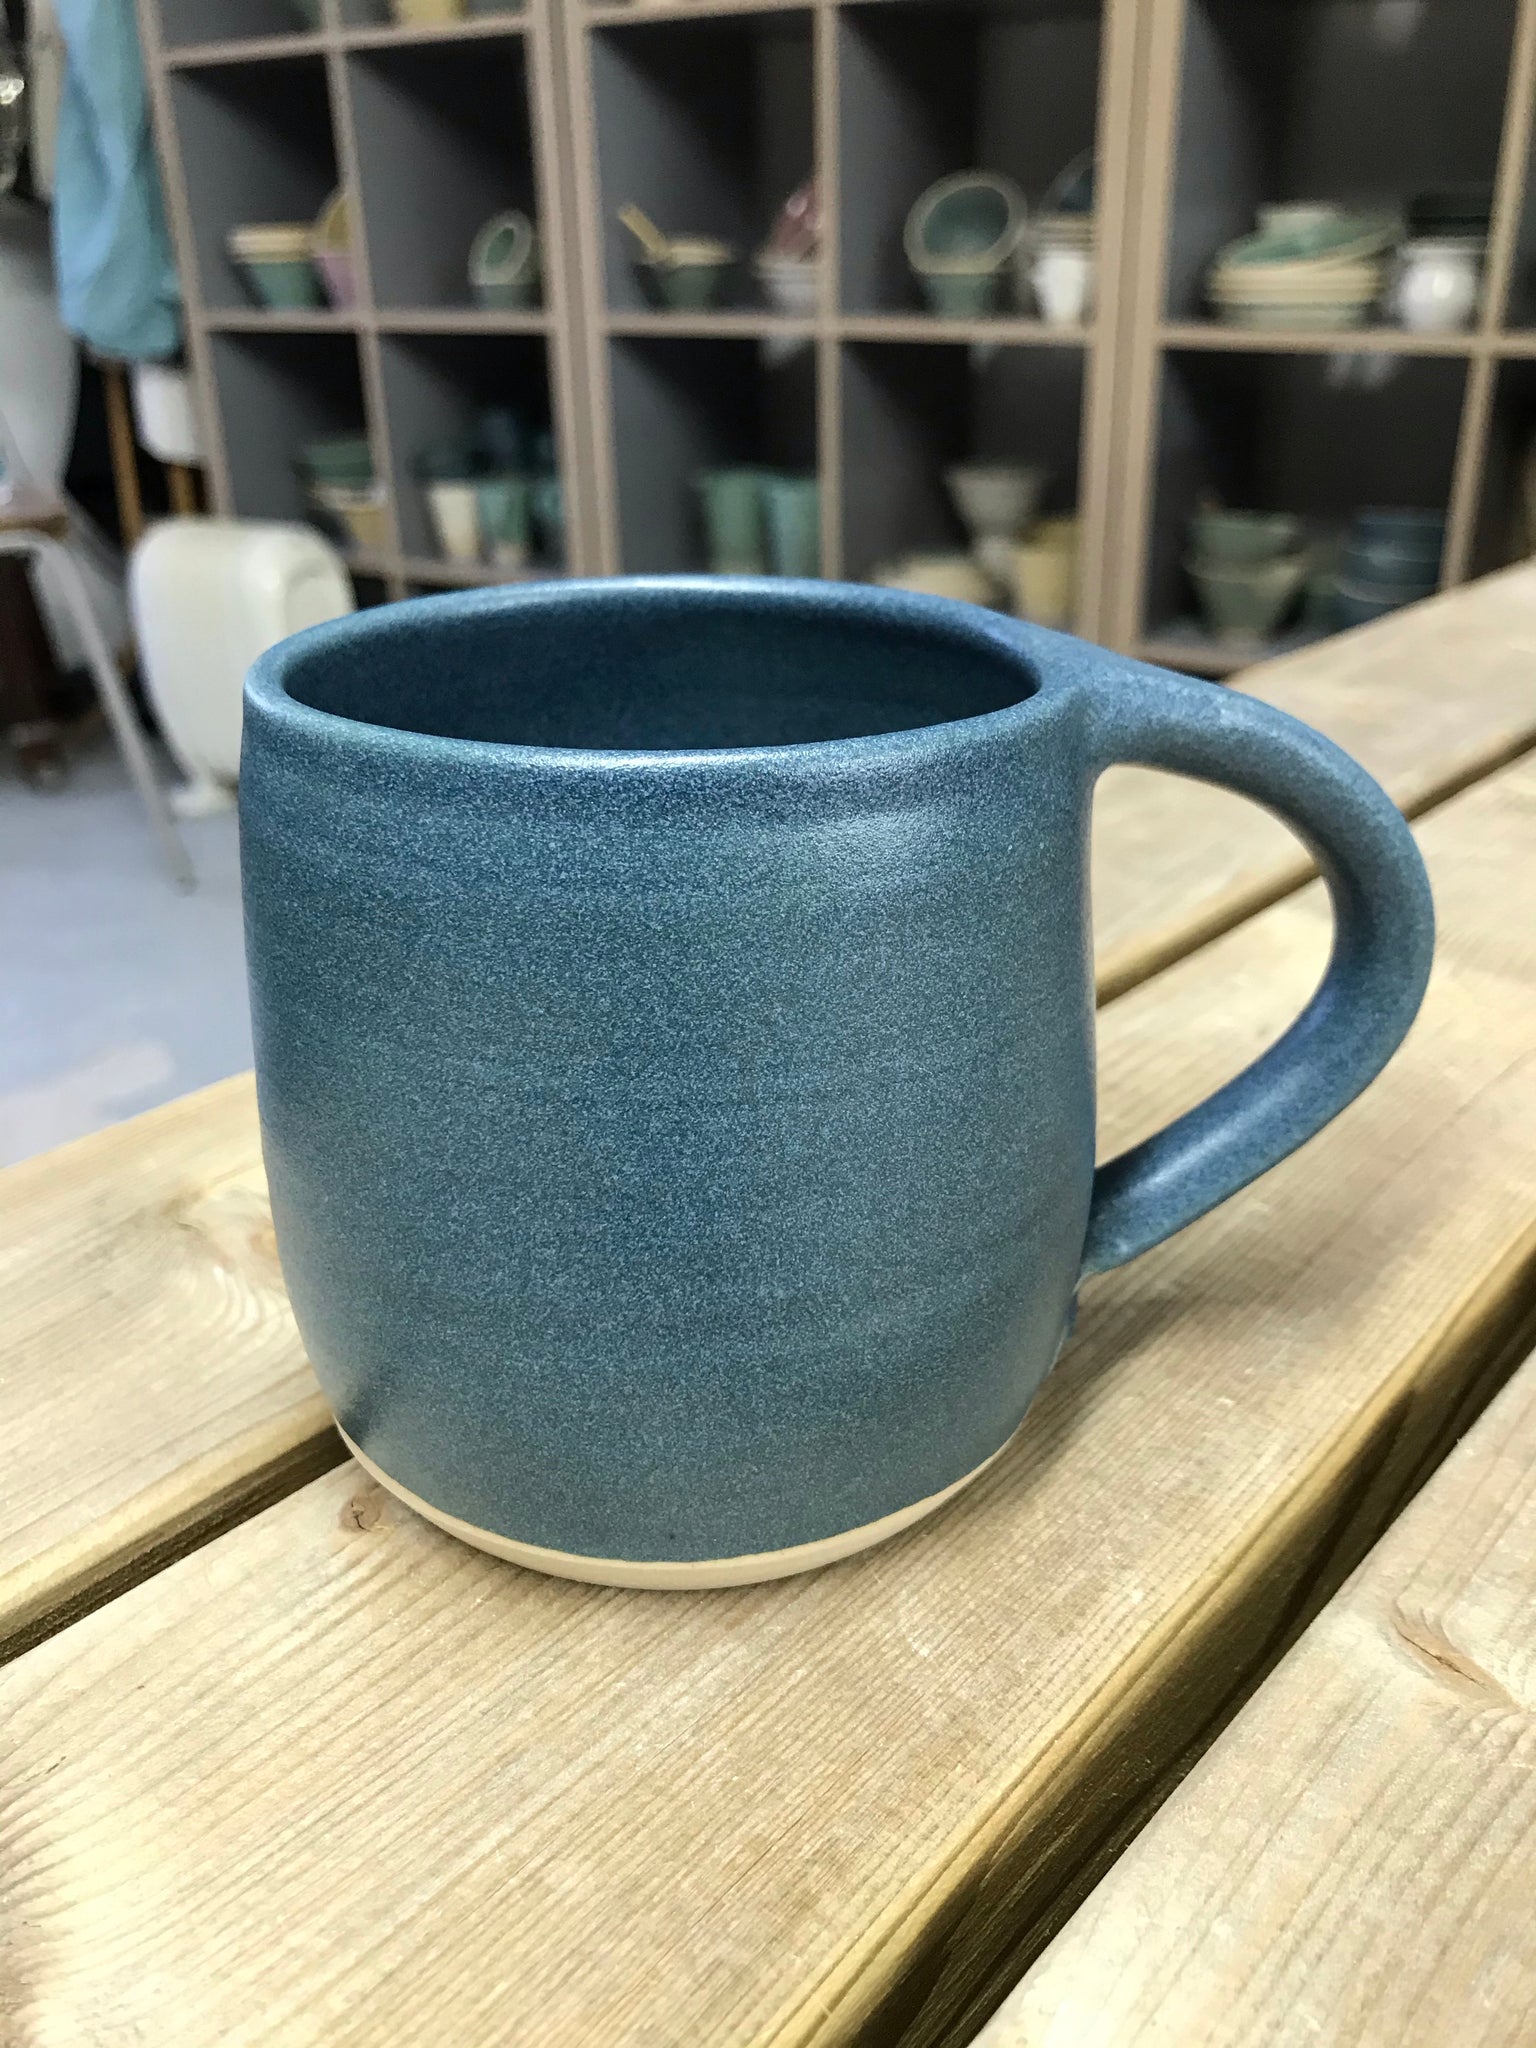 Stoneware Mug